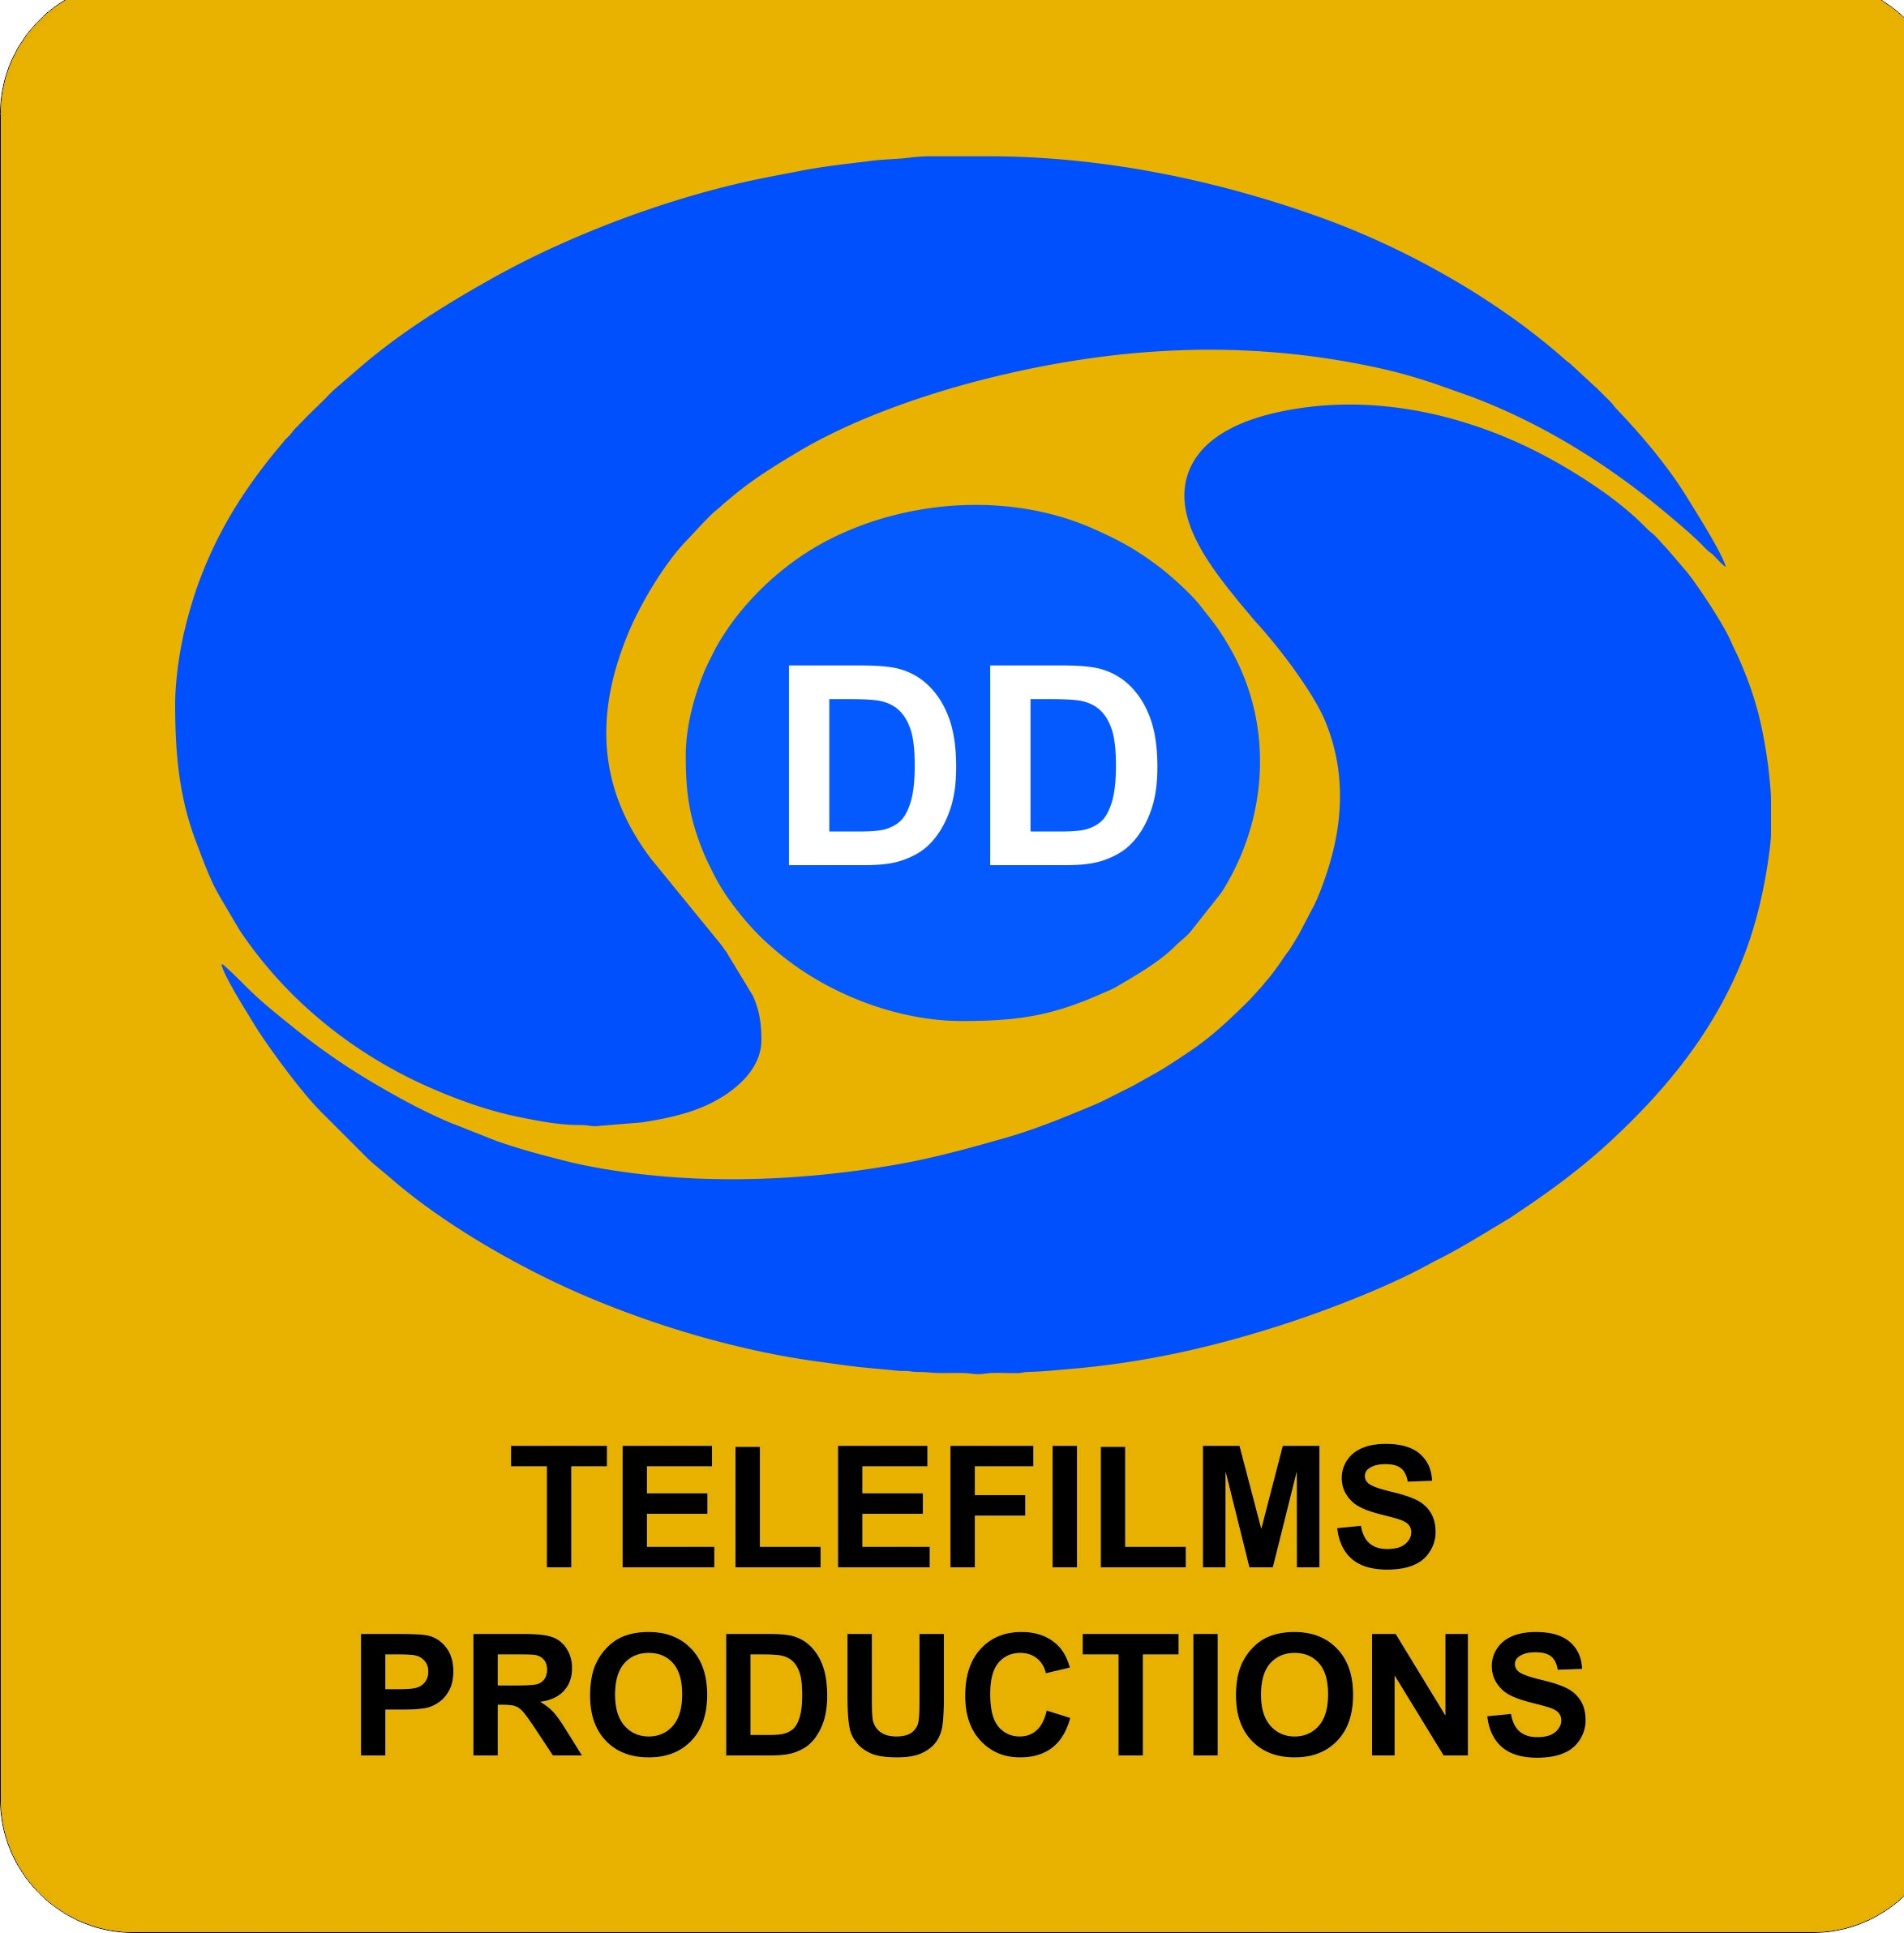 Dd telefilms production house